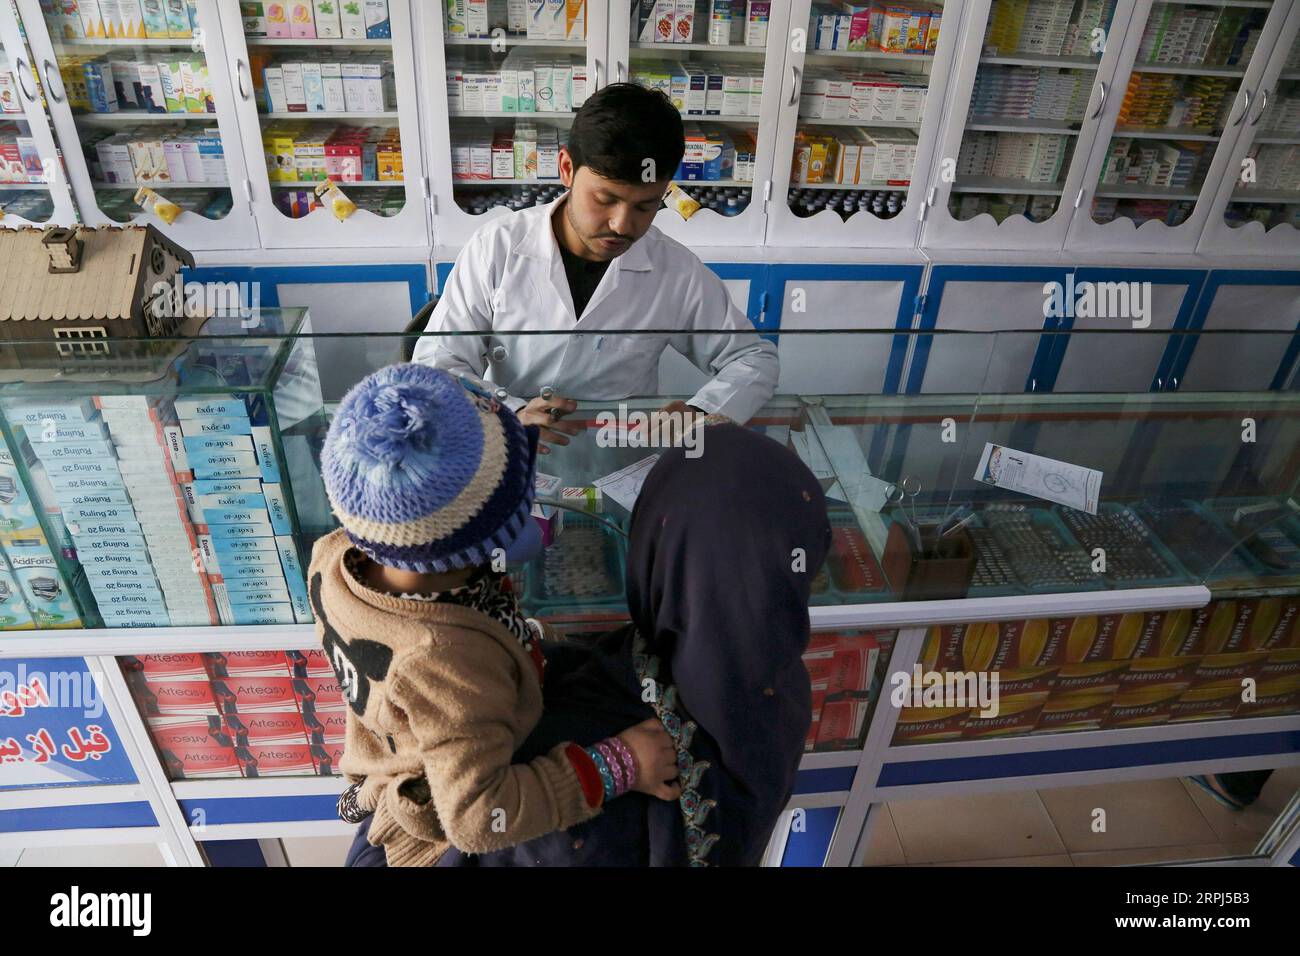 191127 -- KABUL, 27 novembre 2019 -- una donna afghana acquista medicine in una farmacia a Kabul, Afghanistan, 27 novembre 2019. L'Afghanistan applicherebbe la tecnologia blockchain per la prima volta nel suo settore sanitario come un memorandum d'intesa è stato firmato tra il Ministero della sanità pubblica del paese e la FantomOperations, una società a blocchi, una dichiarazione ha detto martedì. Sotto il protocollo d'intesa, la tecnologia blockchain aiuterebbe il Ministero della sanità pubblica dell'Afghanistan a identificare farmaci falsi, creare cartelle cliniche negli ospedali e informatizzare i file dei pazienti, ha detto il ministero nella dichiarazione po Foto Stock